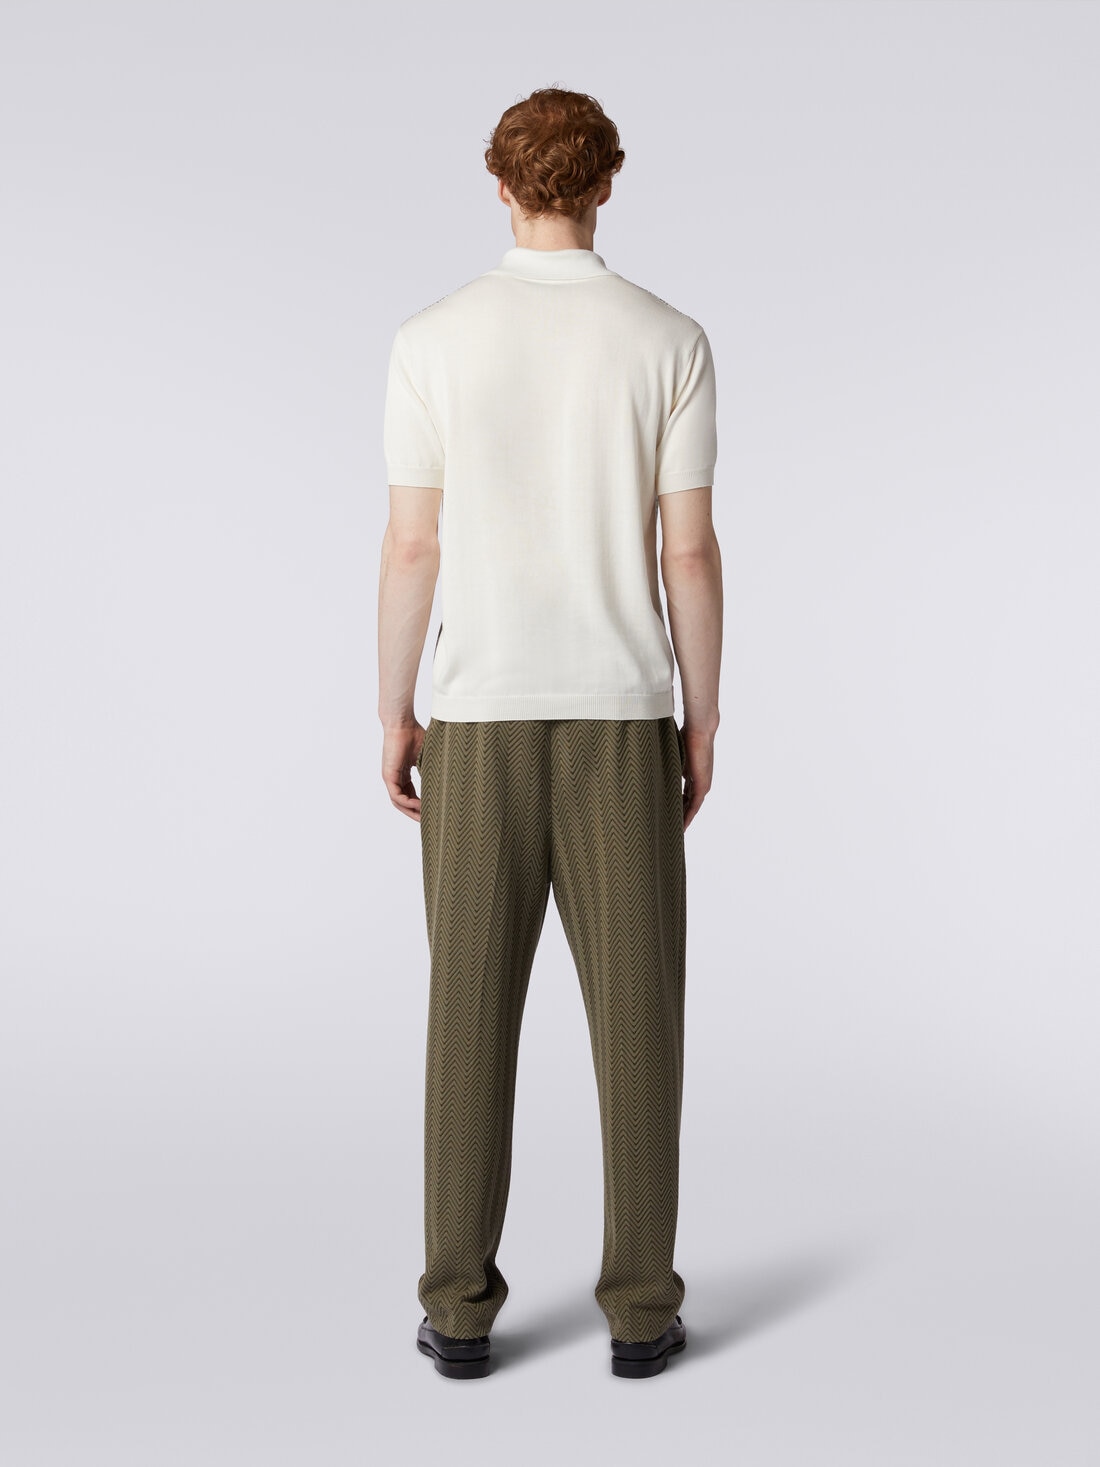 ポロシャツ ショートスリーブ ジグザグ コントラストカラーの縁取り, マルチカラー  - US24S20EBK021XS612Q - 3